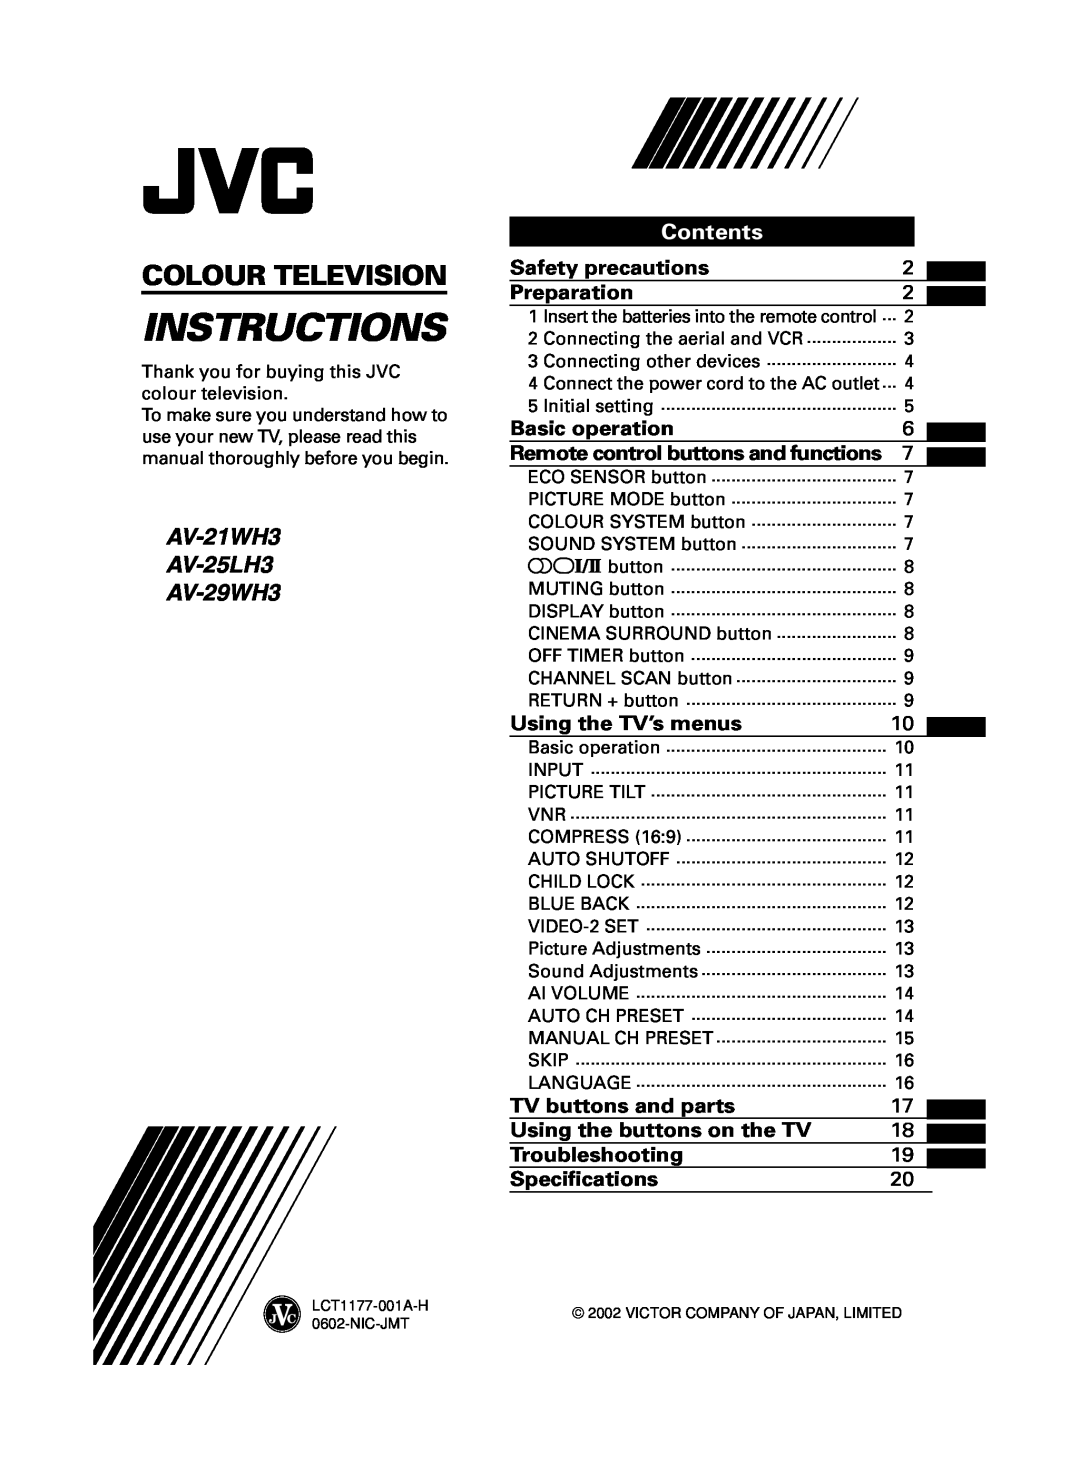 JVC specifications AV-21WH3 AV-25LH3 AV-29WH3, Contents, Instructions, Colour Television 